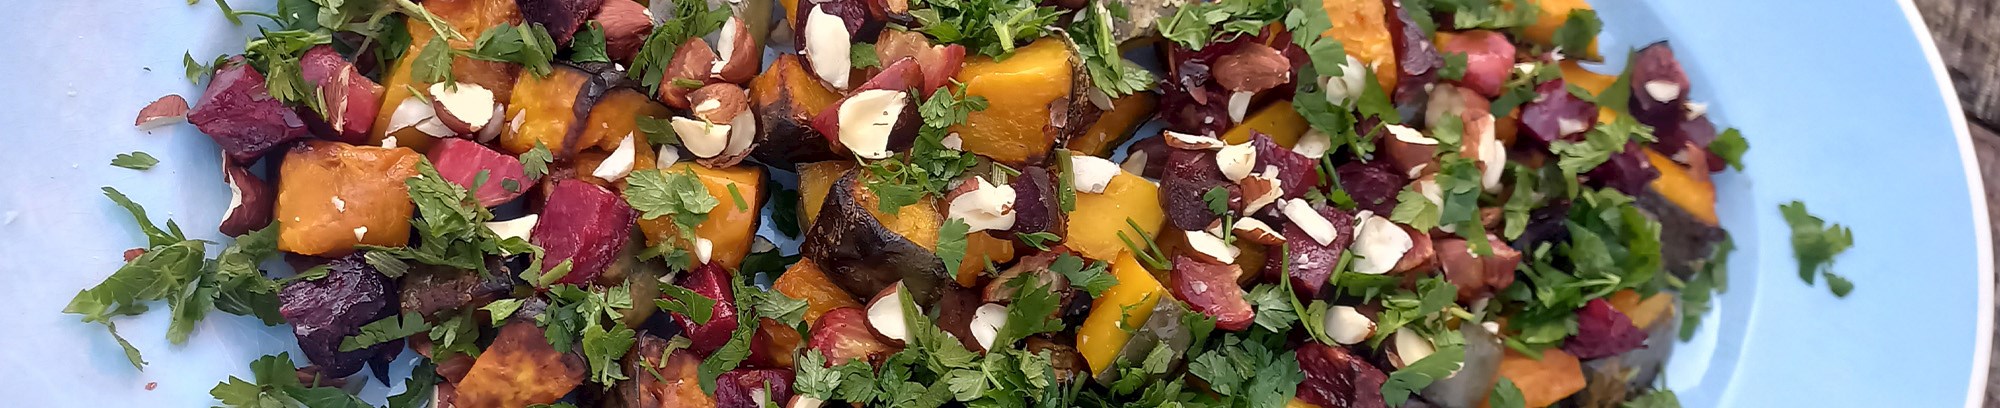 Et flot blåt fad med grøntsager tilberedt grøn og orange smuk mad